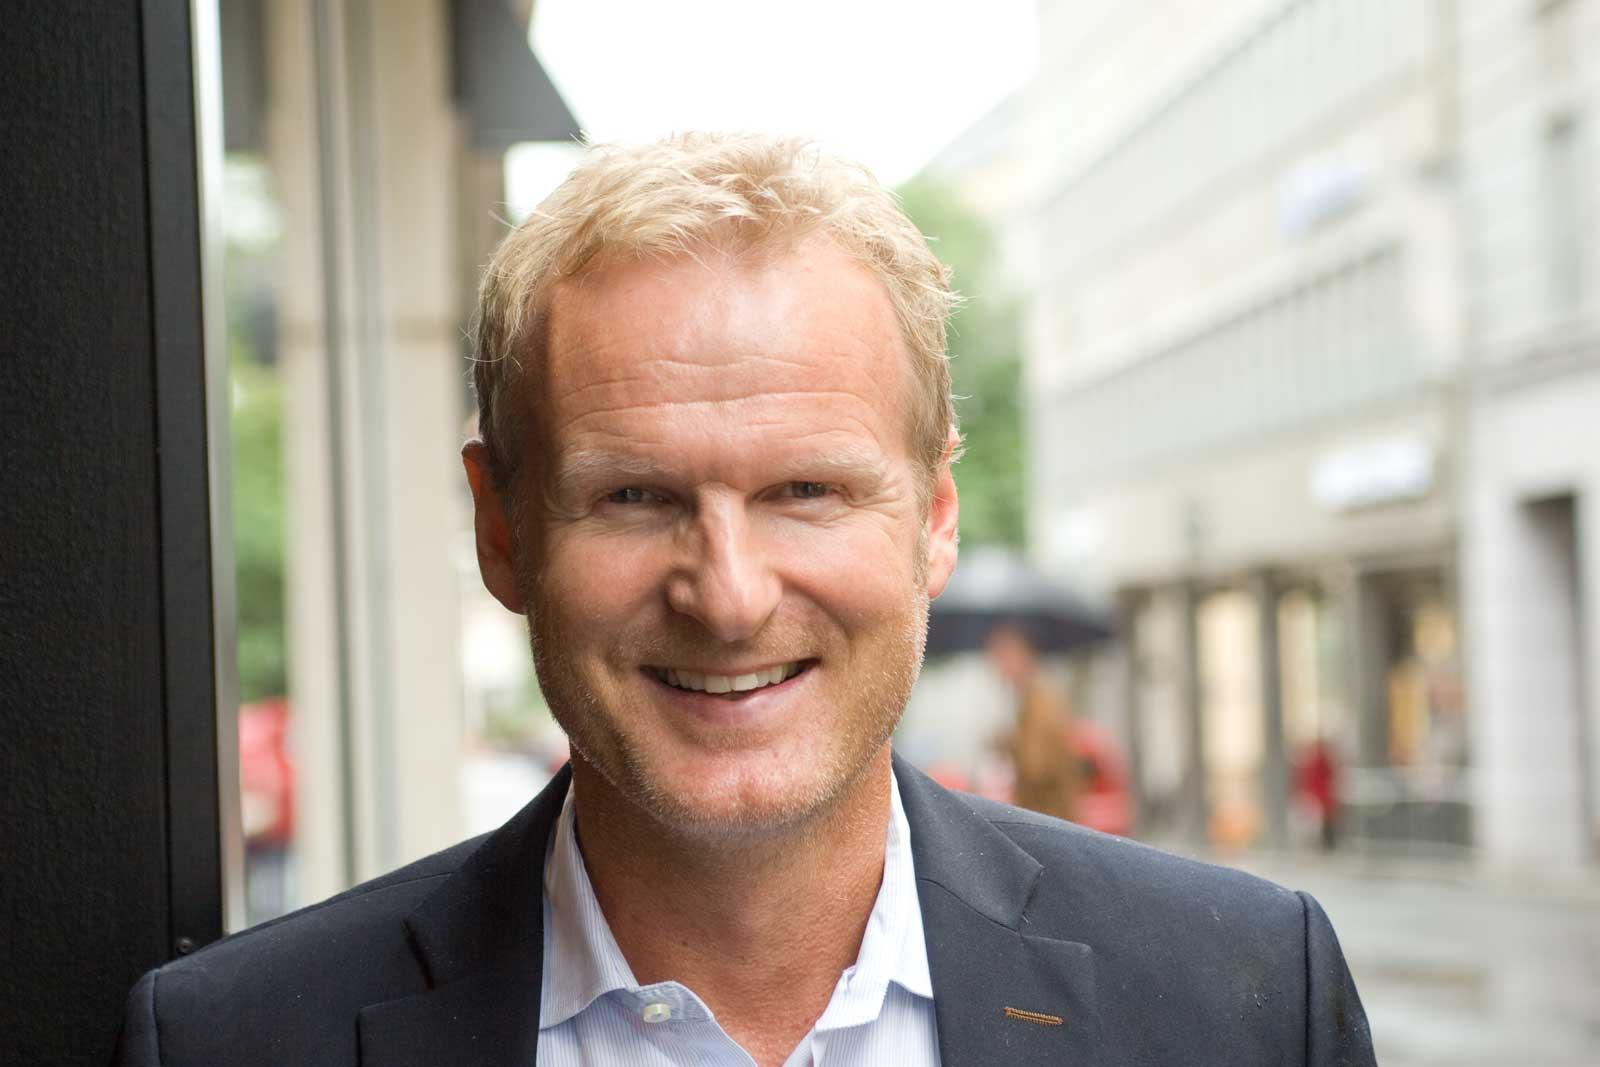 Tidligere Tele2-sjef Haakon Dyrnes gjør seg bemerket som ny Komplett-sjef. Nå senkes prisene.